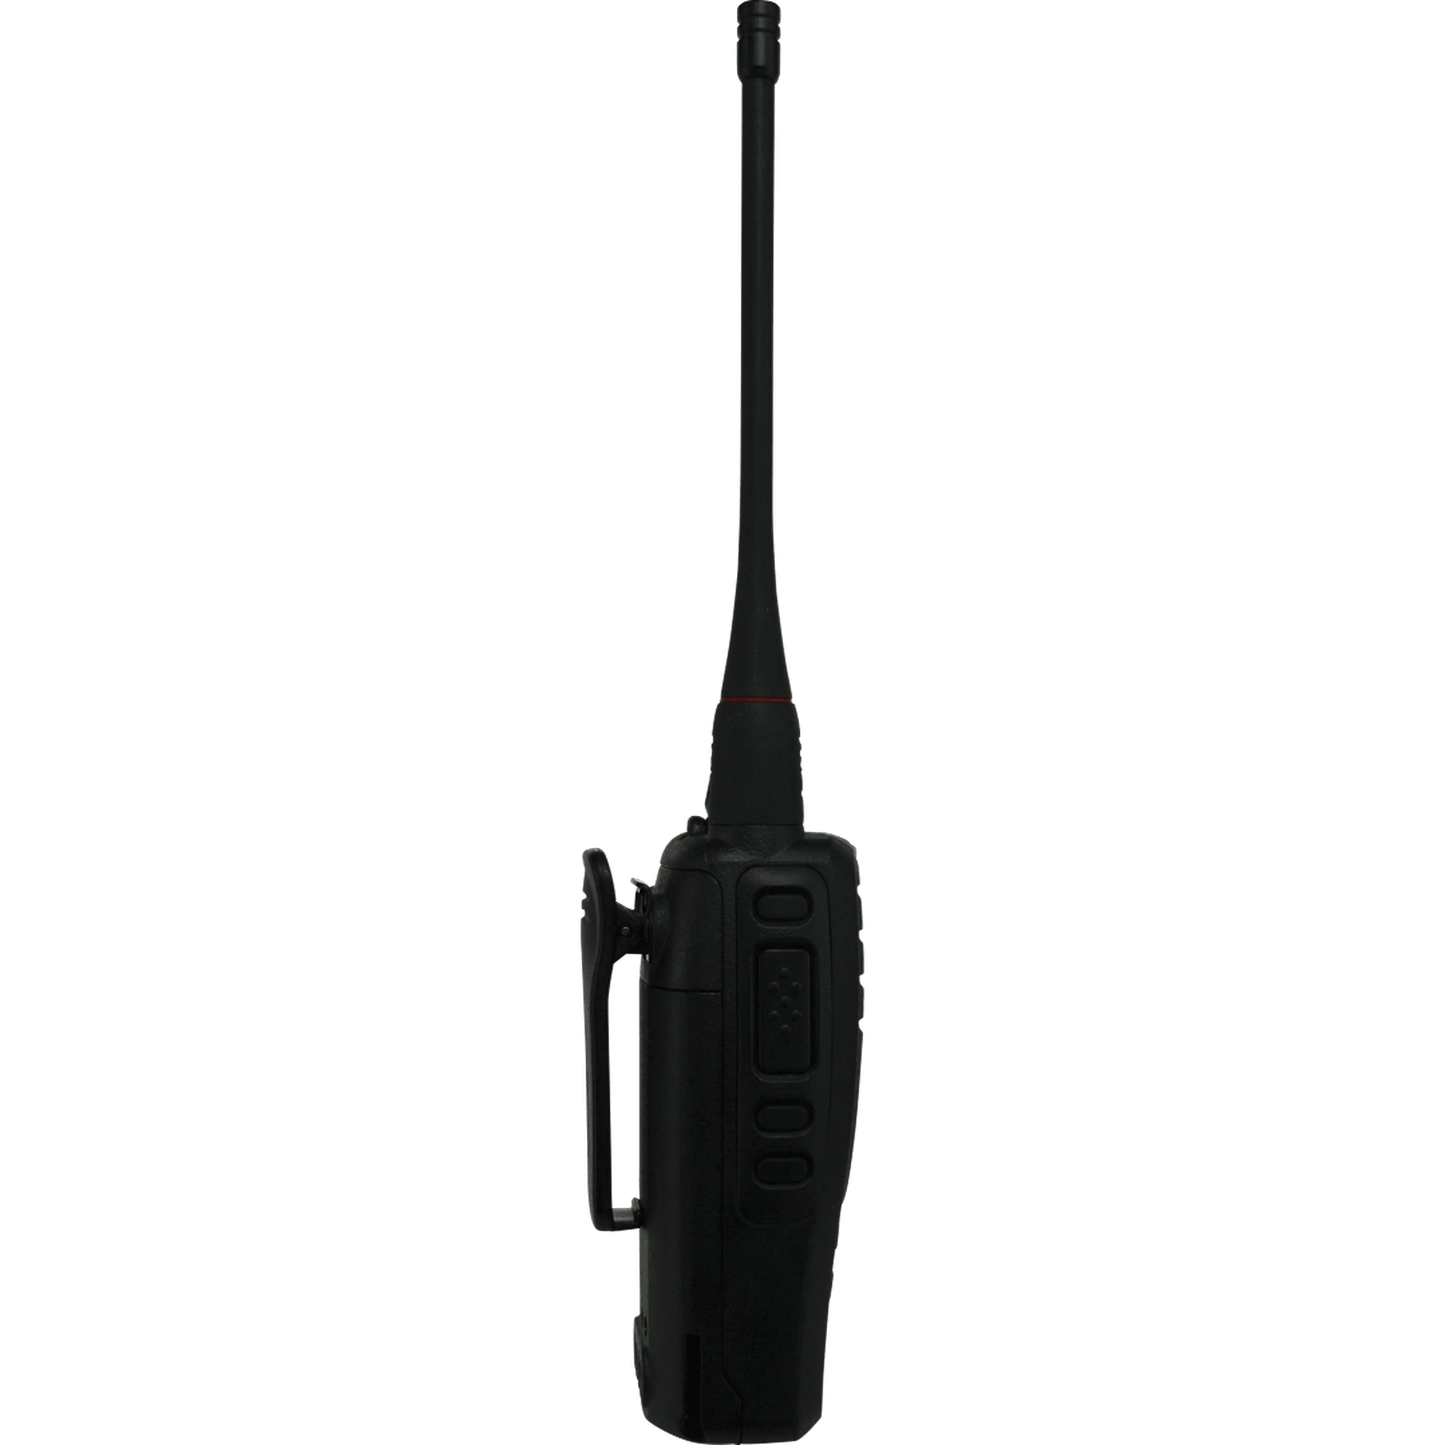 TX6600S - 5 WATT UHF CB HANDHELD RADIO – IP67